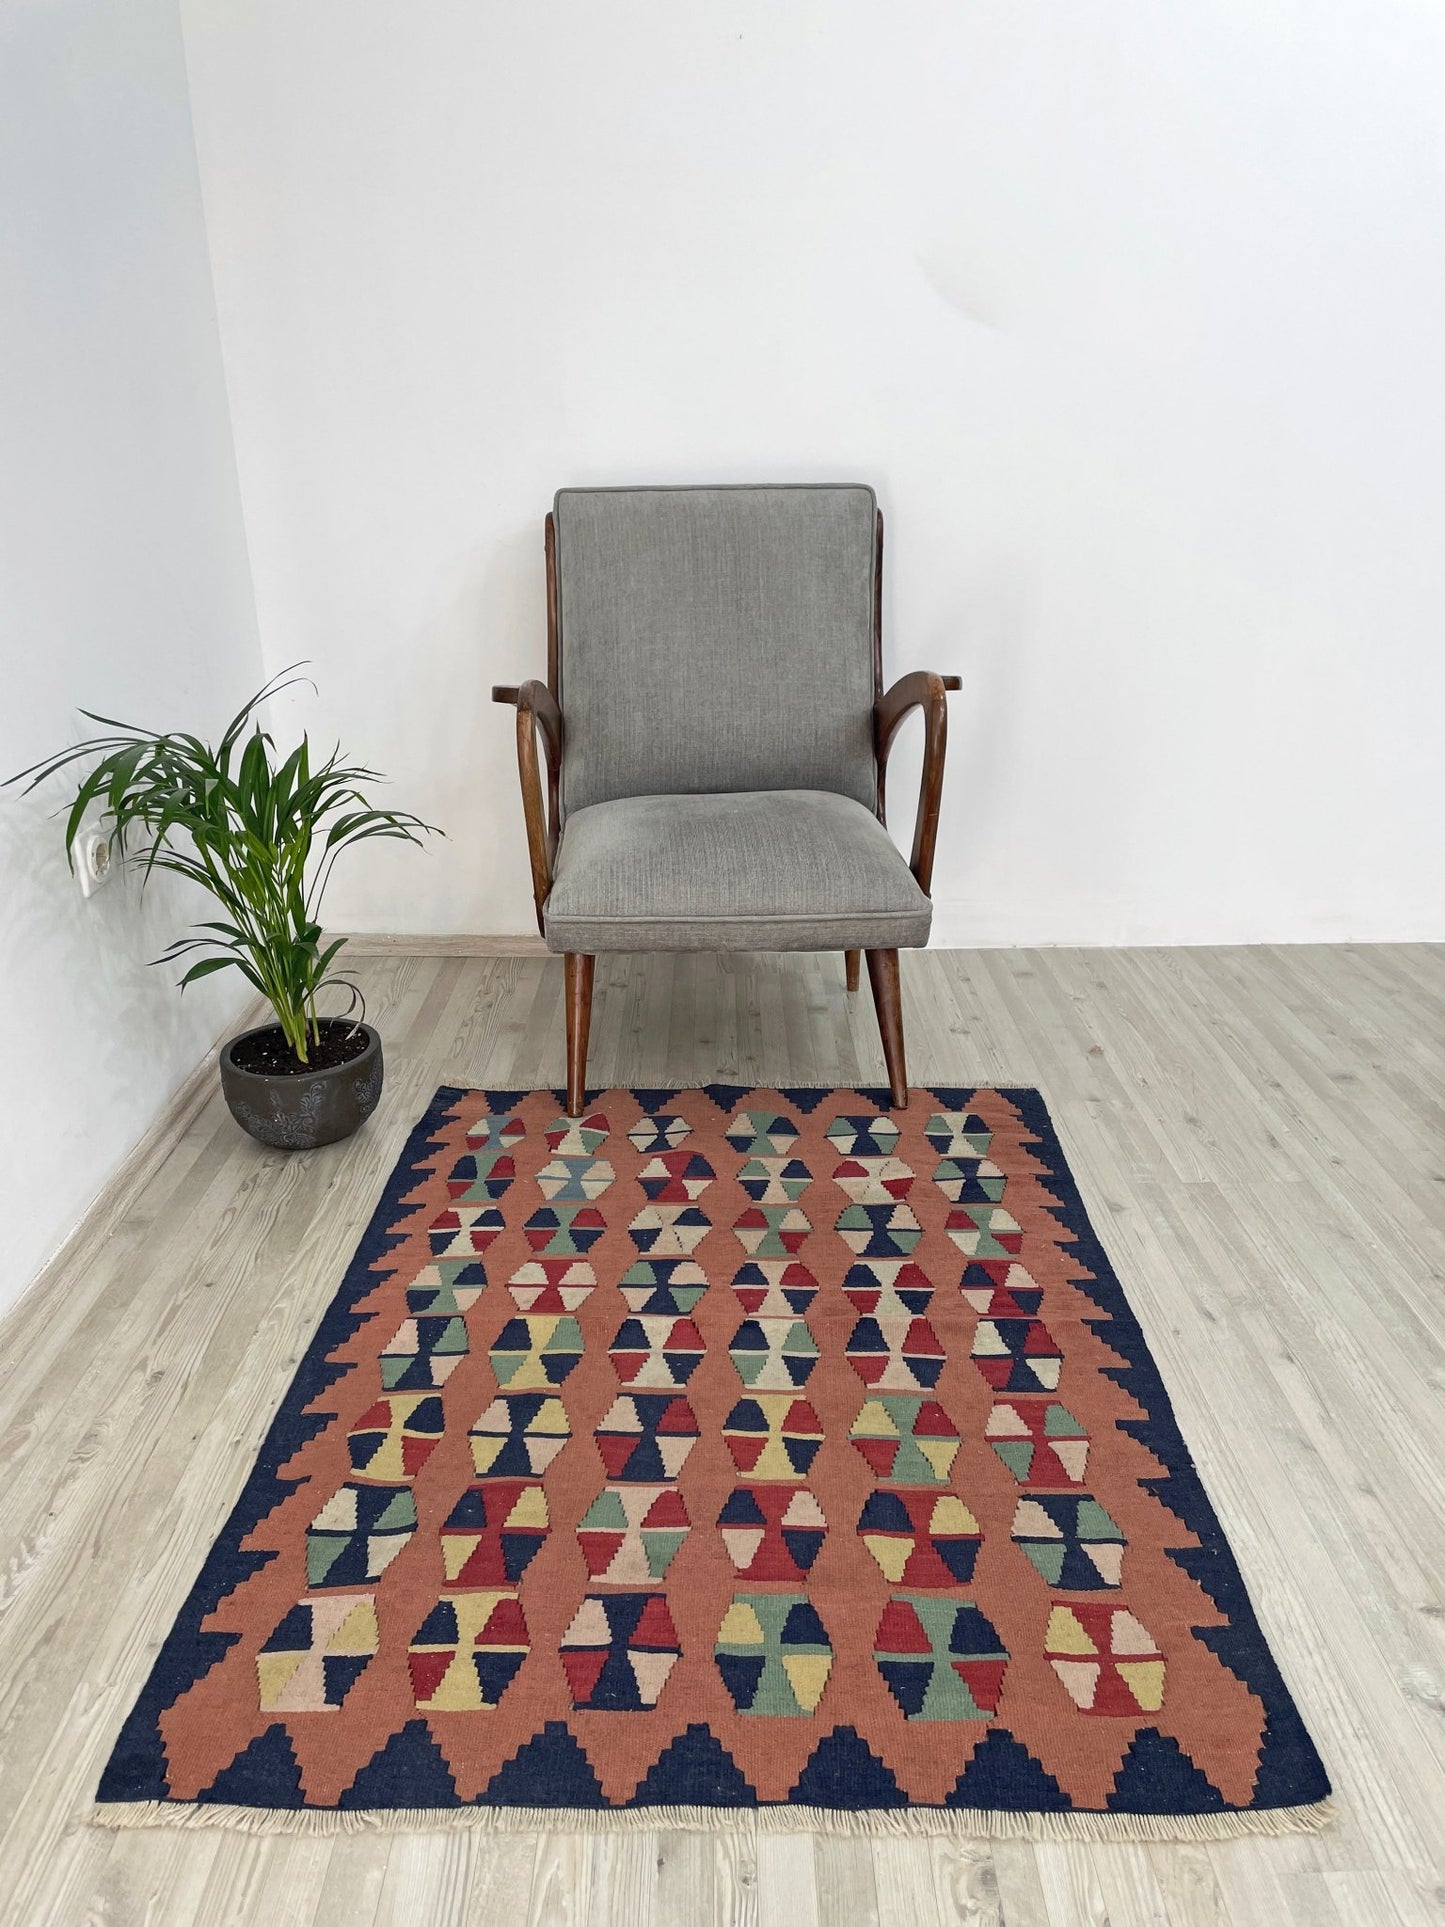 Turkish mini rug. Oriental rug shop san francisco bay area